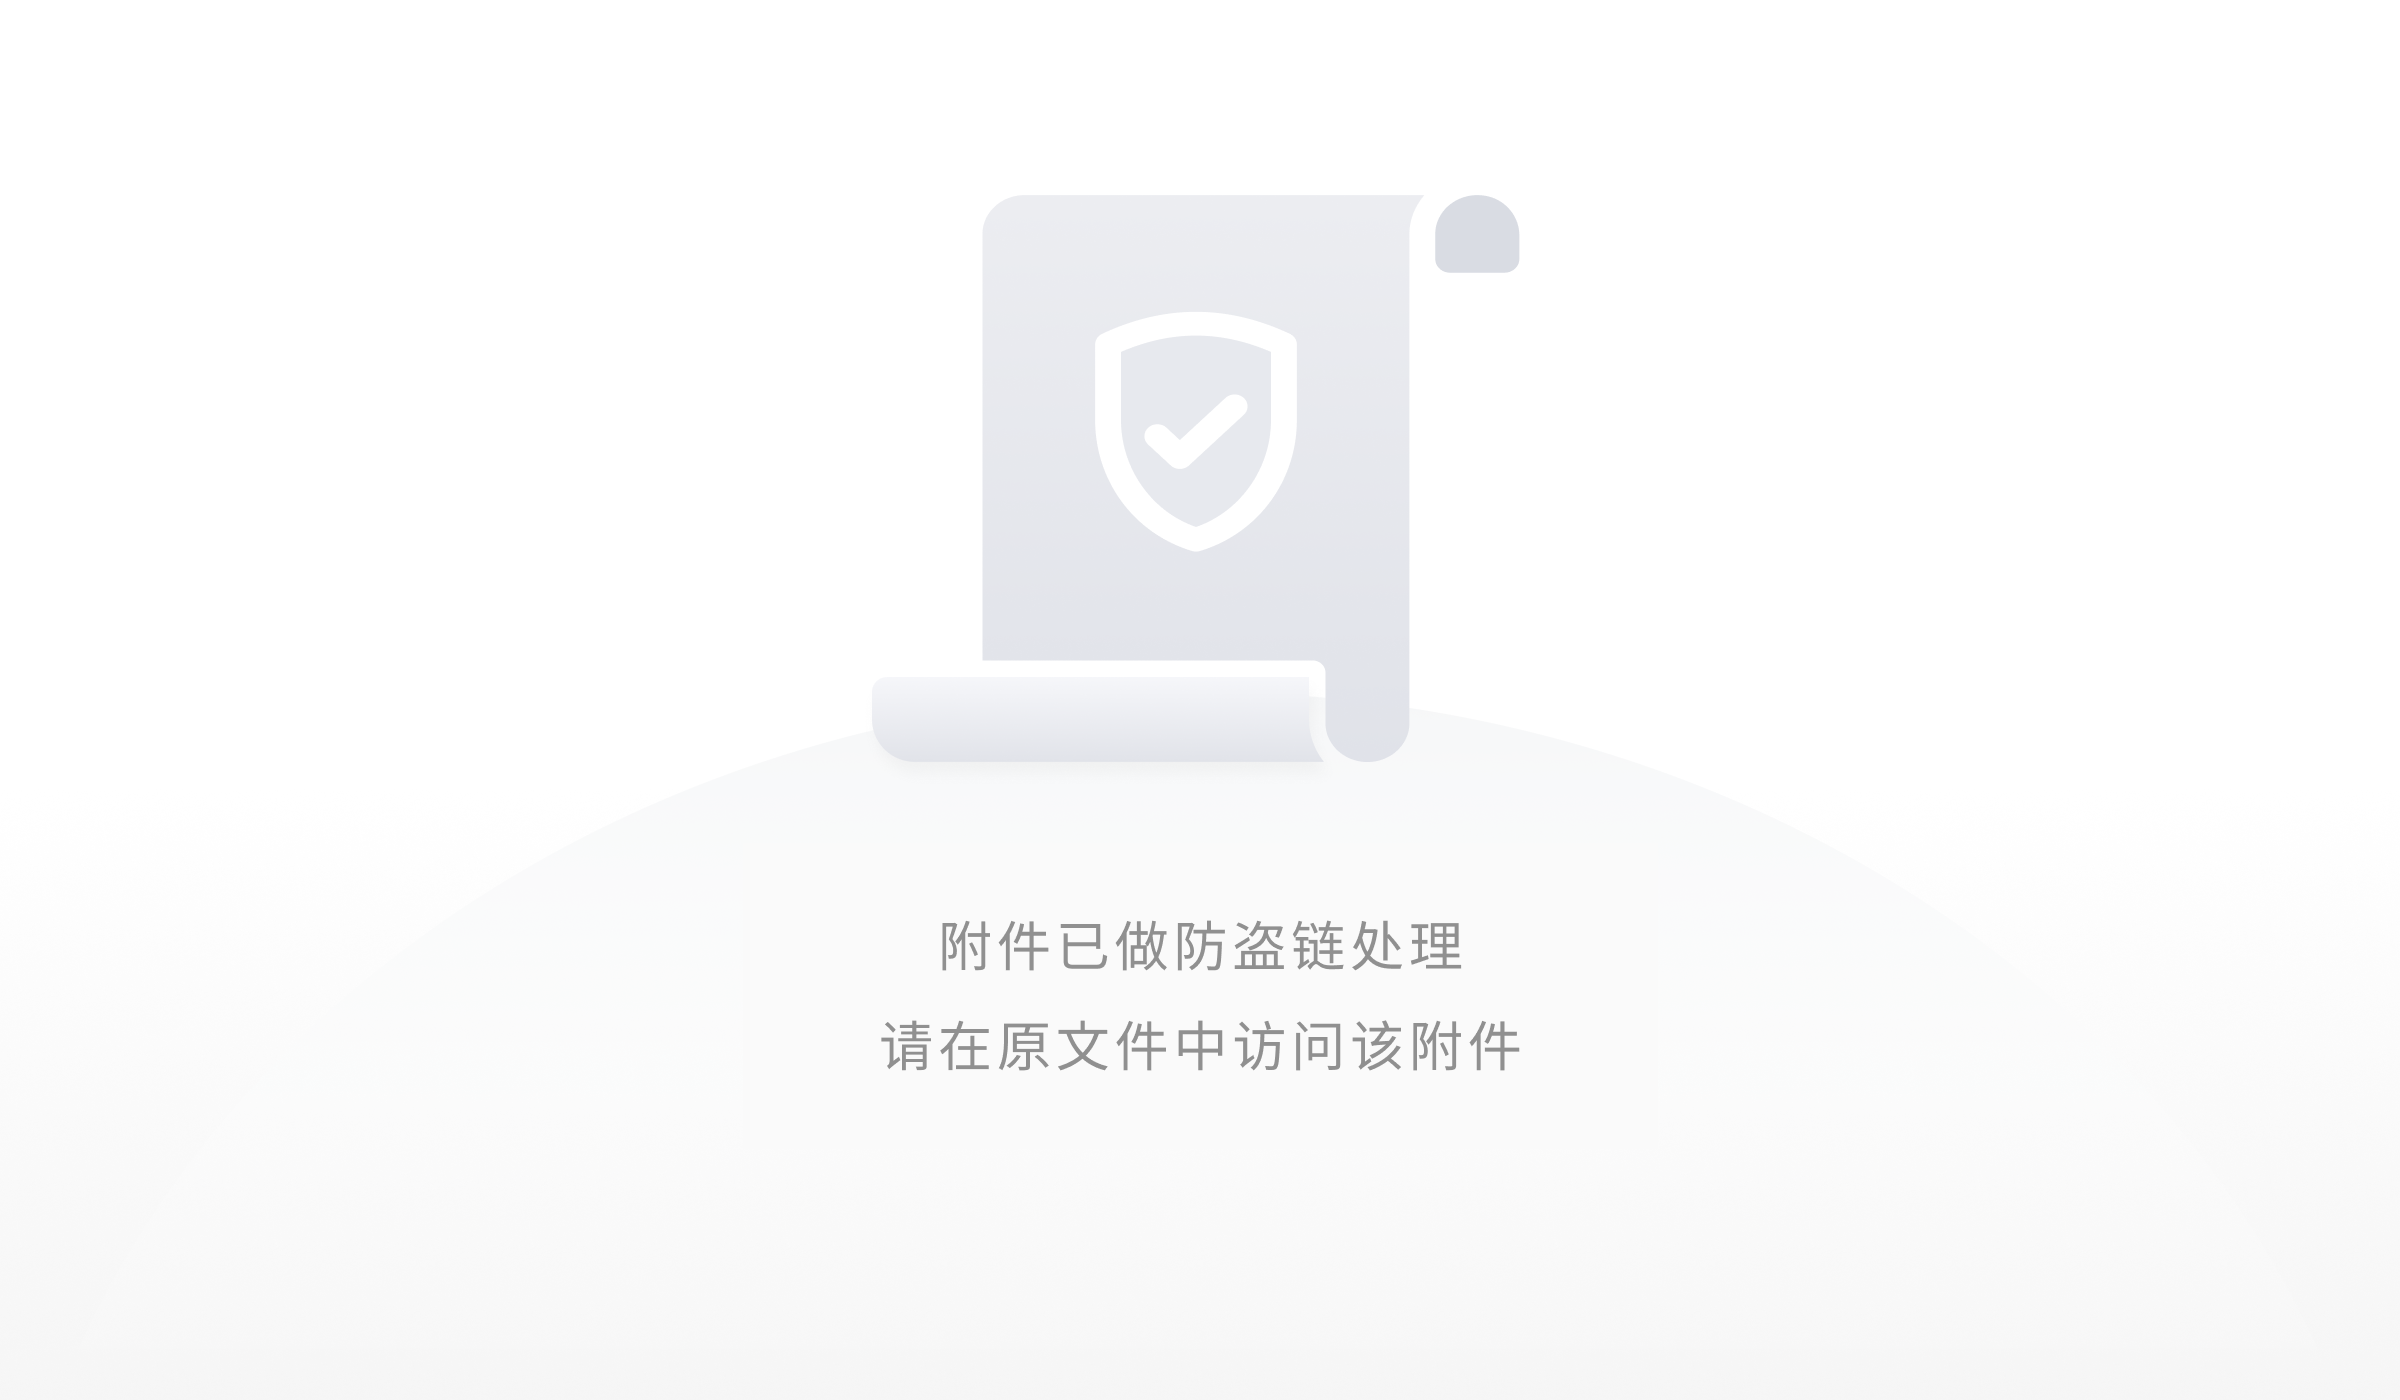 Google账号注册中国大陆手机号无法验证